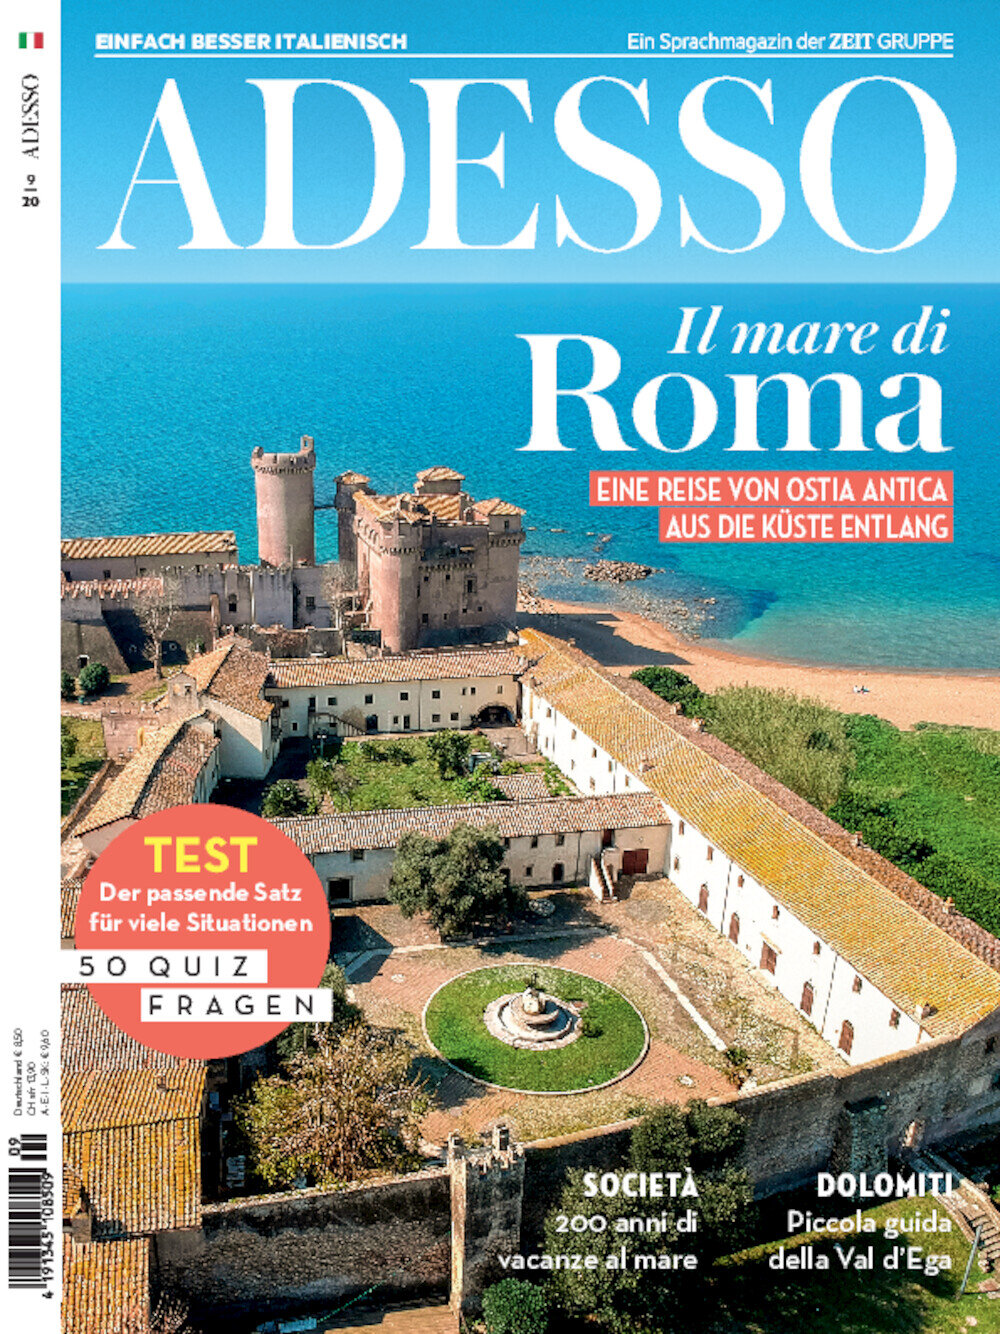 ADESSO eMagazine 09/2020